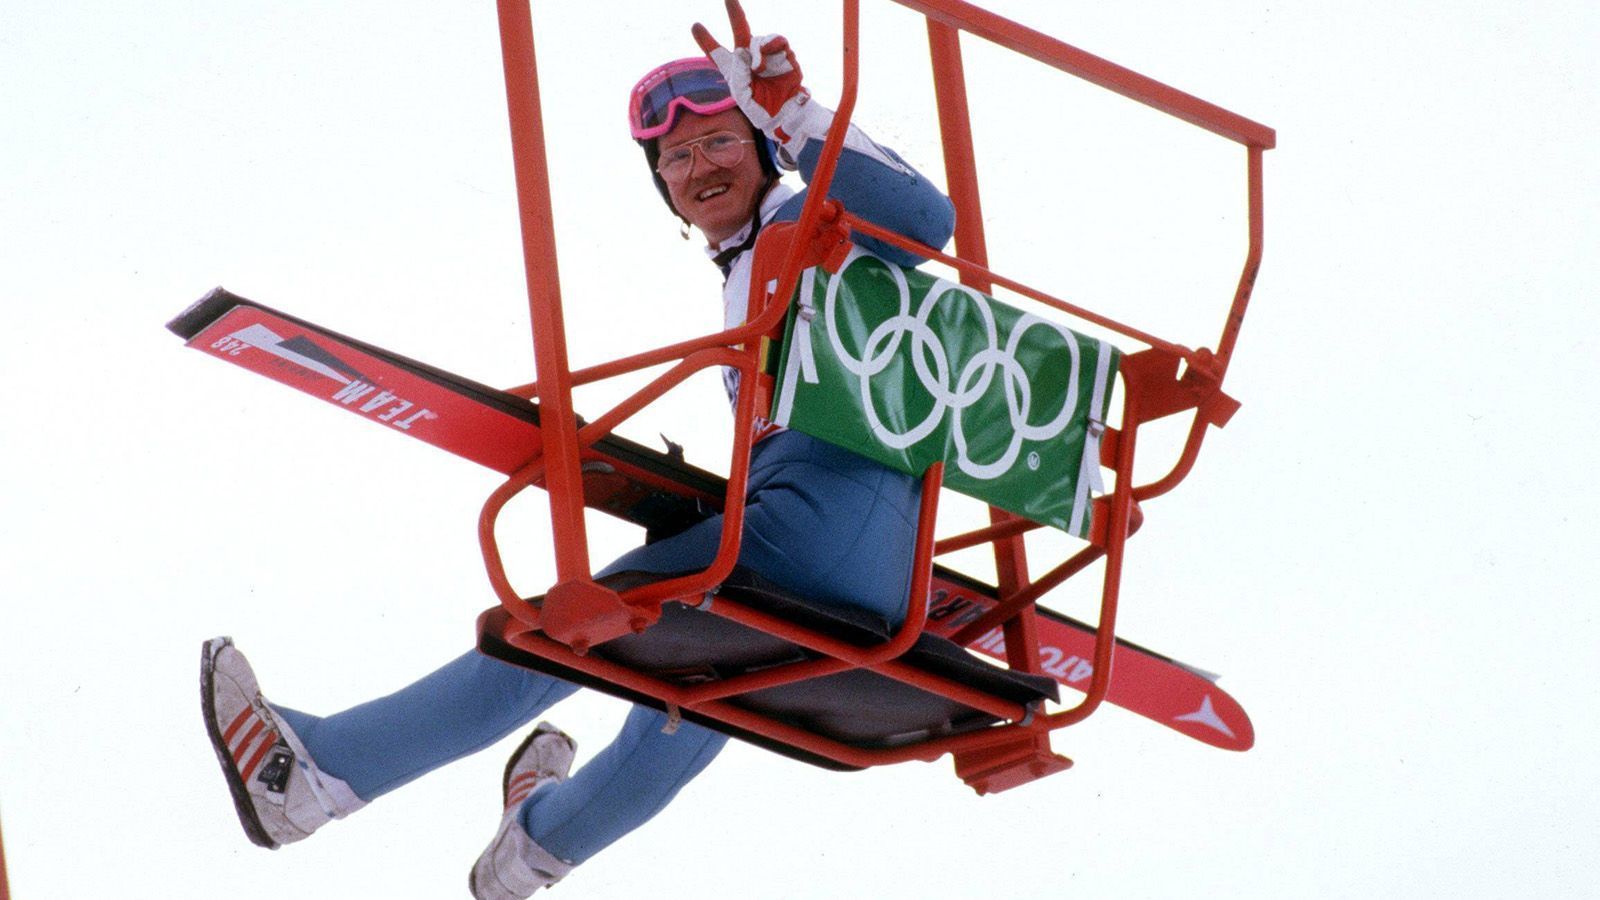 
                <strong>Eddie the Eagle startet bei Olympia in Calgary</strong><br>
                Brillengläser so dick wie Aschenbecher und immer ein Lächeln auf den Lippen - der Konkurrenz springt Eddie "the Eagle" Michael Edwards zwar hinterher, avanciert aber bei den Olympischen Winterspielen in Calgary aber dafür zum absoluten Publikumsliebling.
              